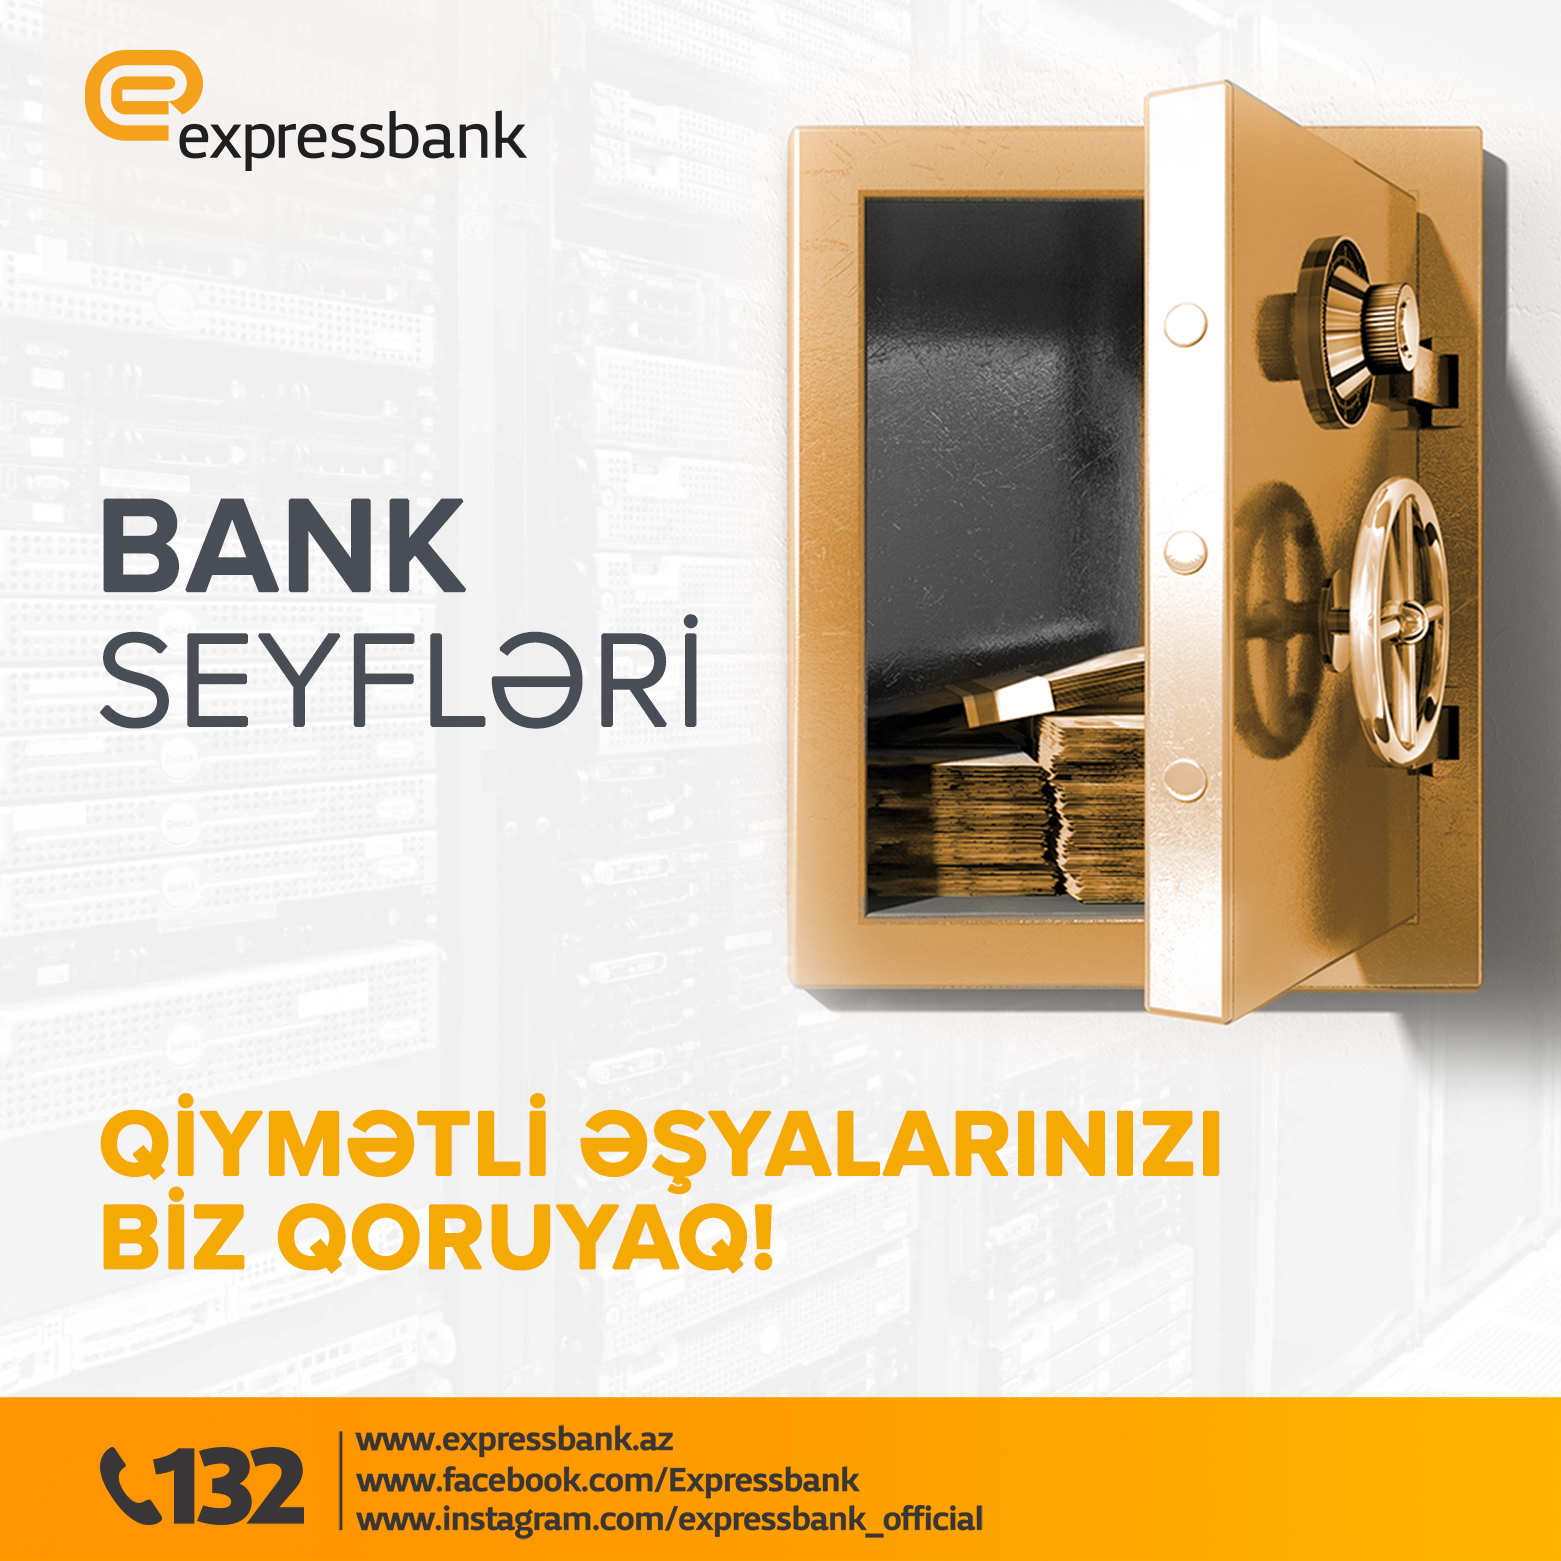 Expressbank- dan sərfəli bank seyfləri xidməti